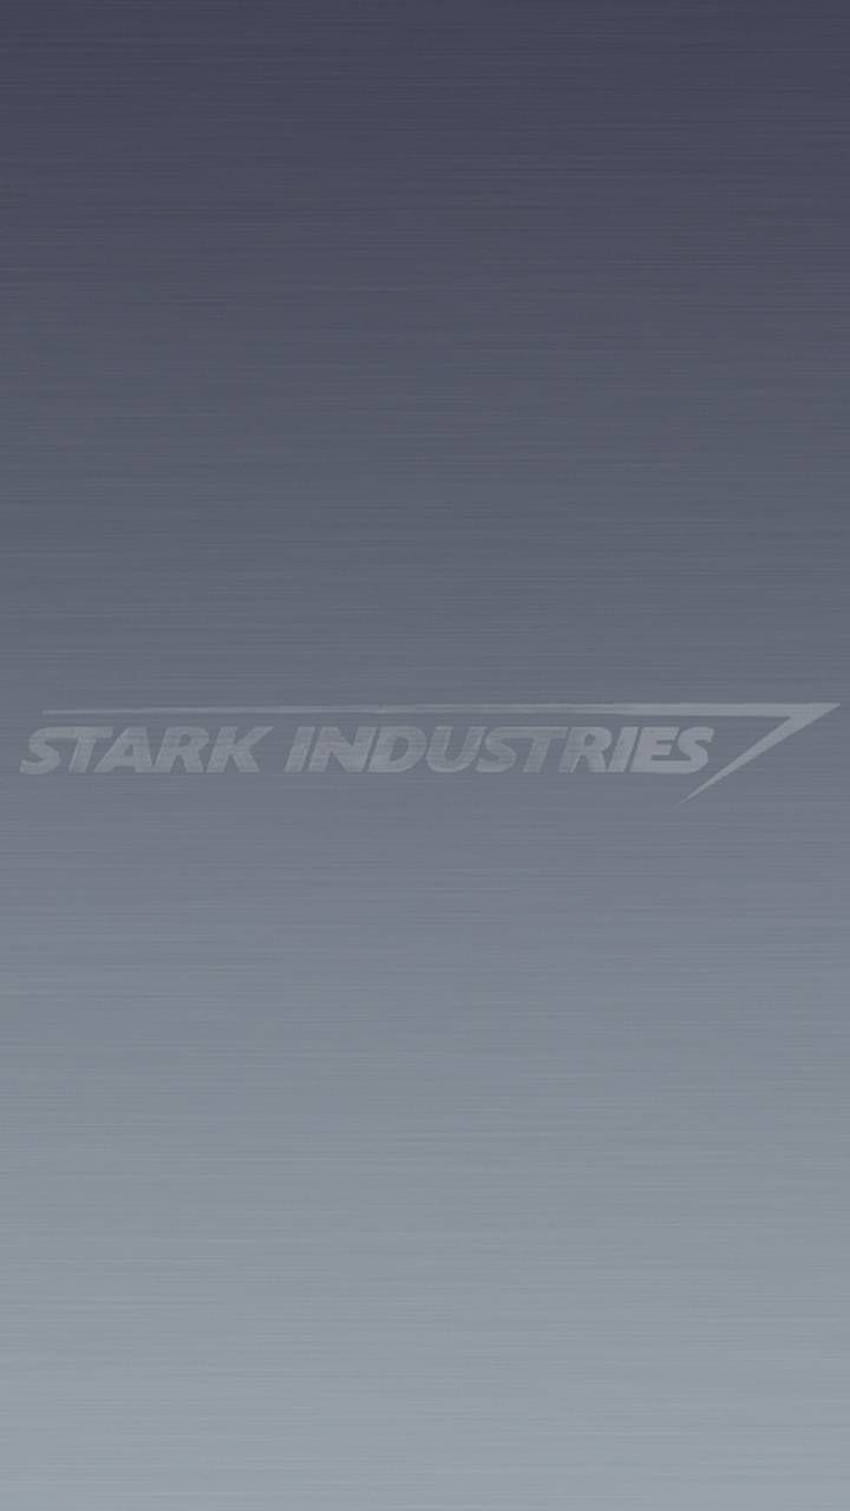 Stark Industries publicado por Ethan Sellers, industrias minimalistas y rígidas fondo de pantalla del teléfono